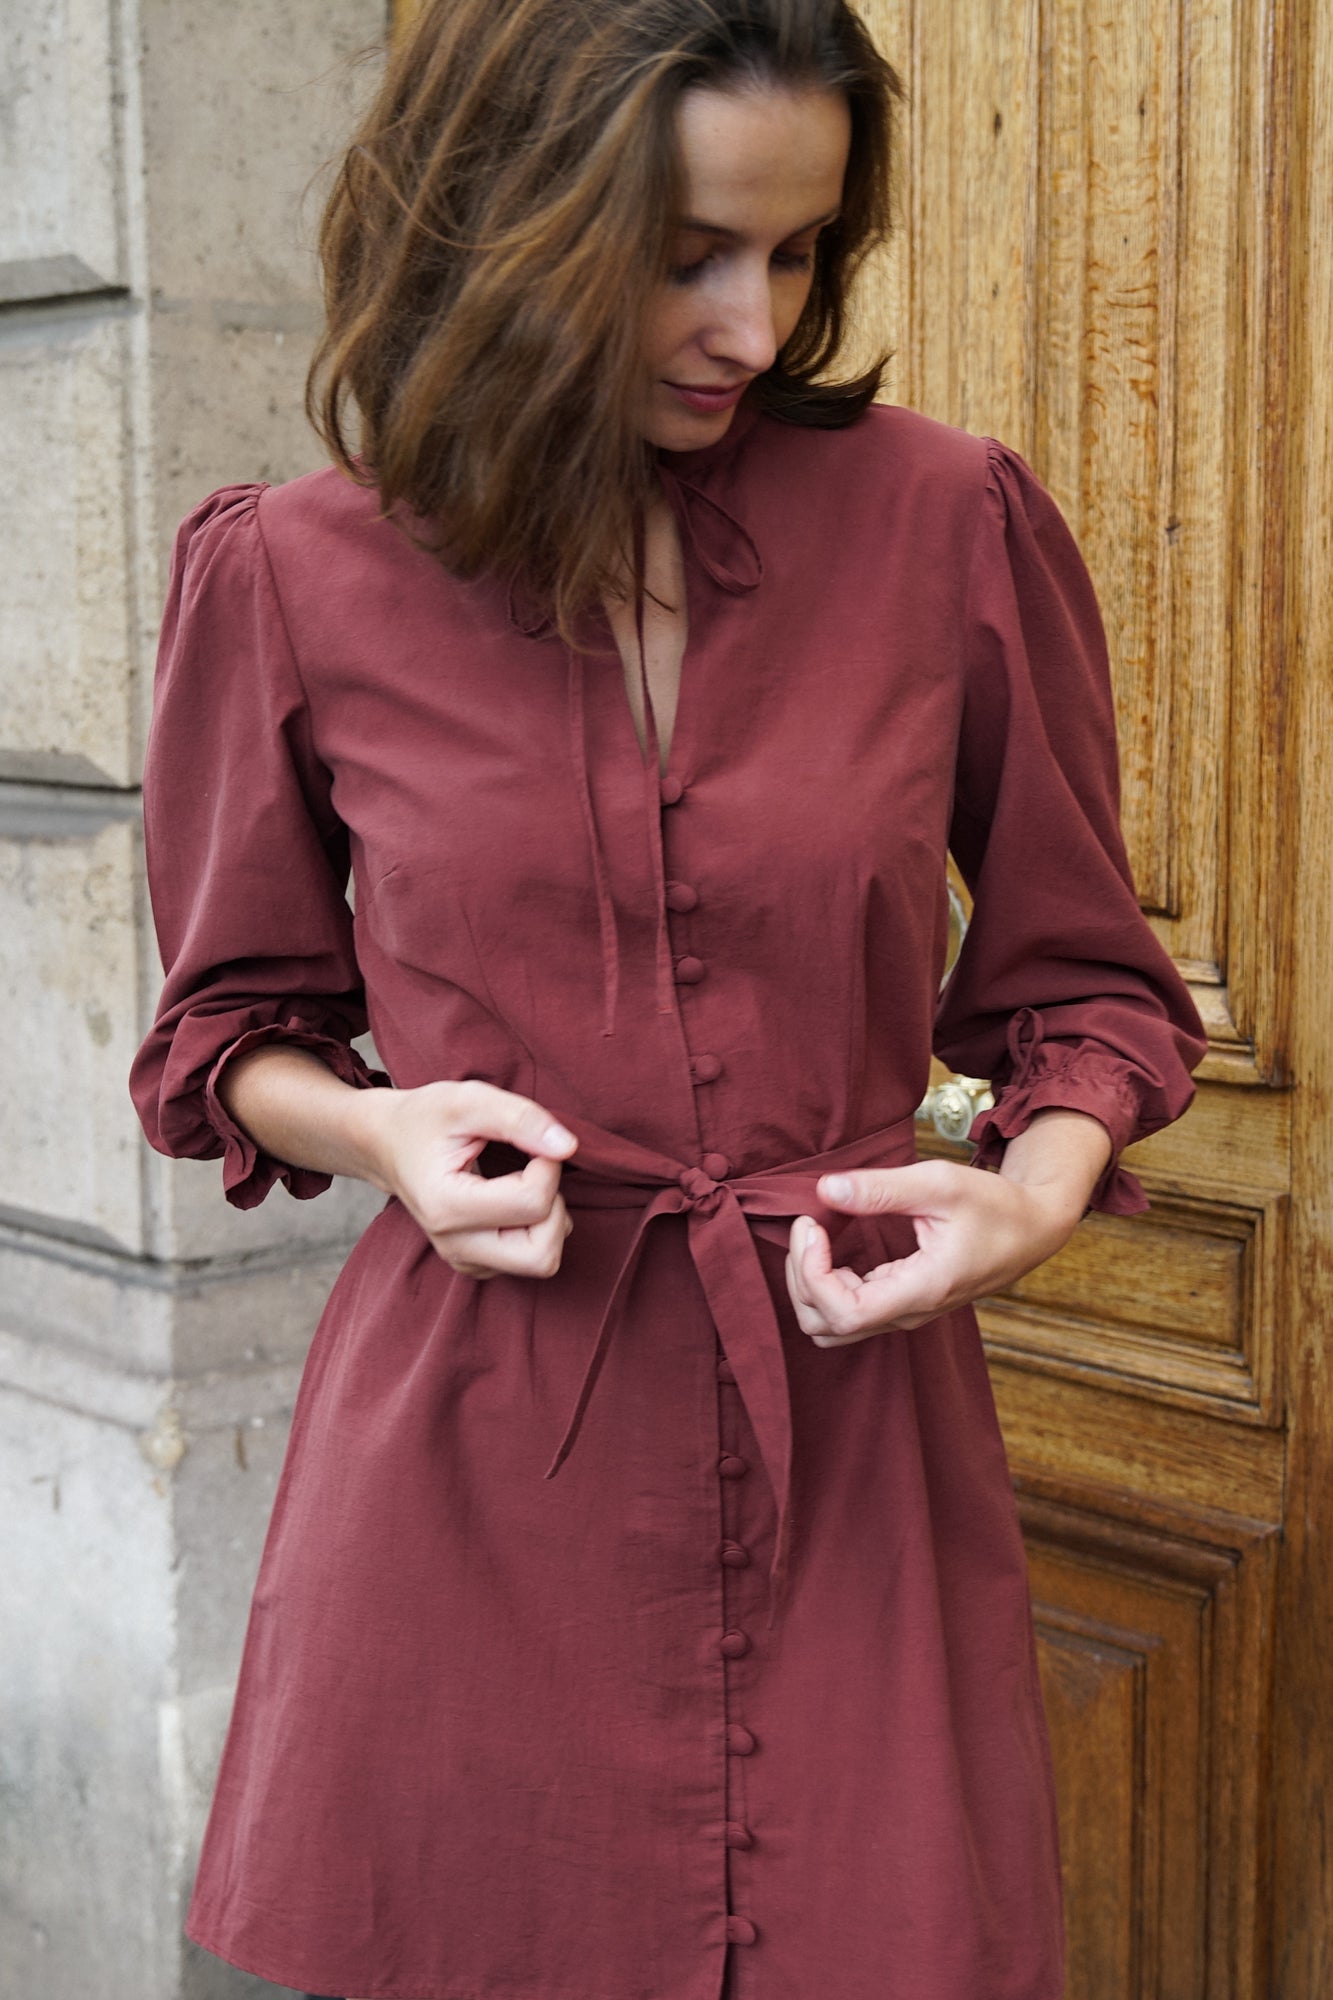 Femme portant une robe courte de couleur rouge/marron, devant une porte d'immeuble parisien. La robe est cintrée à la taille, avec une ceinture en tissu et des boutons recouverts sur le devant. Elle a des détails froufrous sur le col et sur ses manches bouffantes, ainsi que des fermetures à brides. C'est un modèle de la marque éthique et éco-responsable Pelmel Paris.